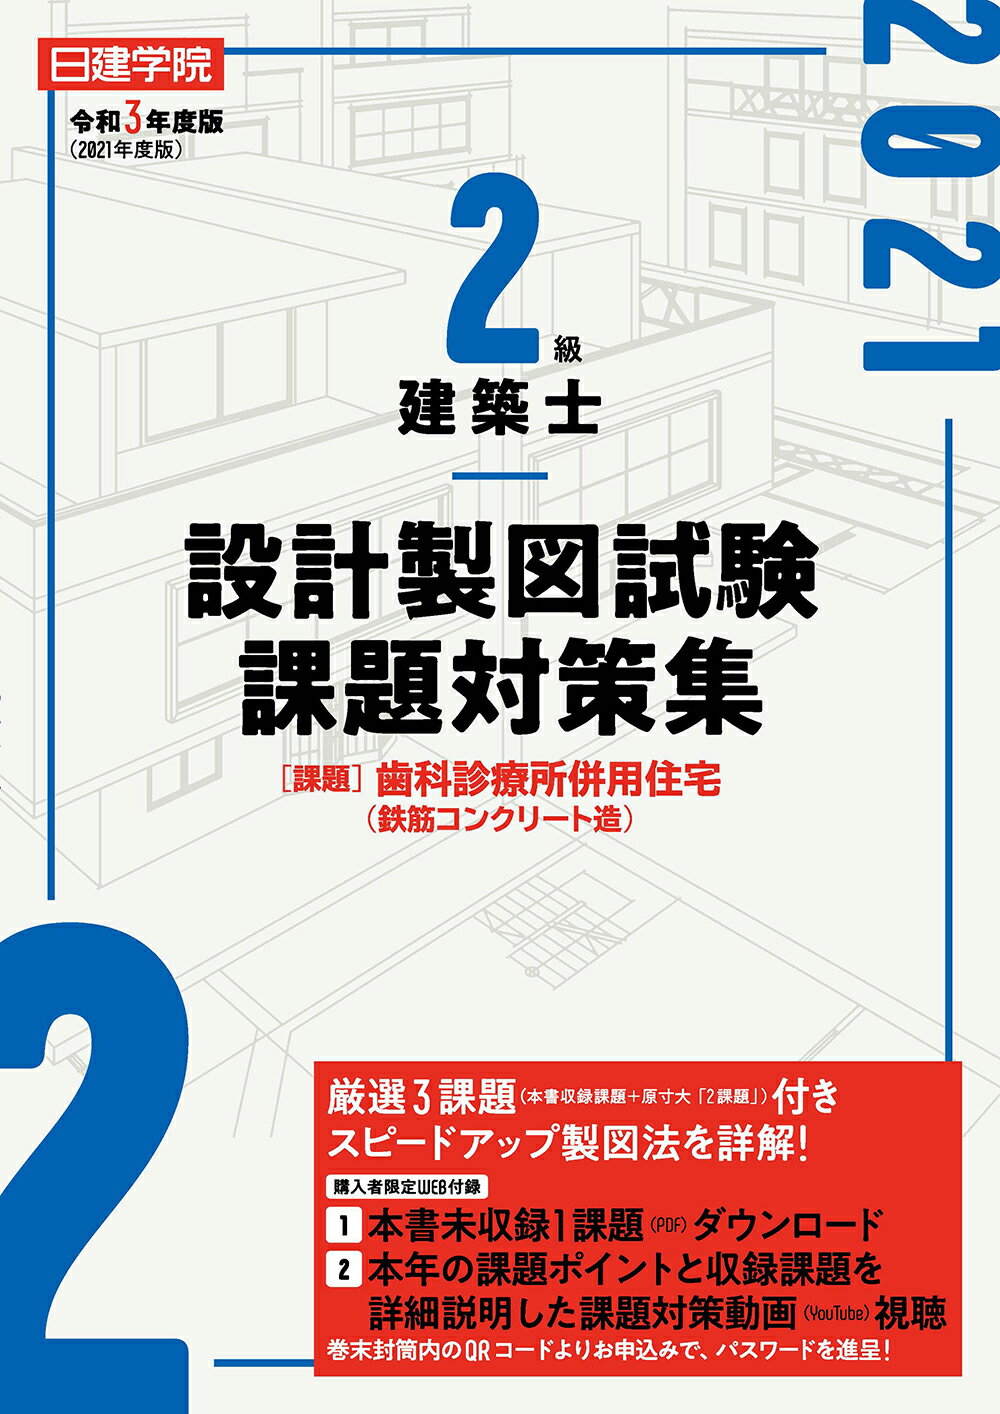 二級建築士 DVD 全日本建築士会 2021 www.childnepal.org